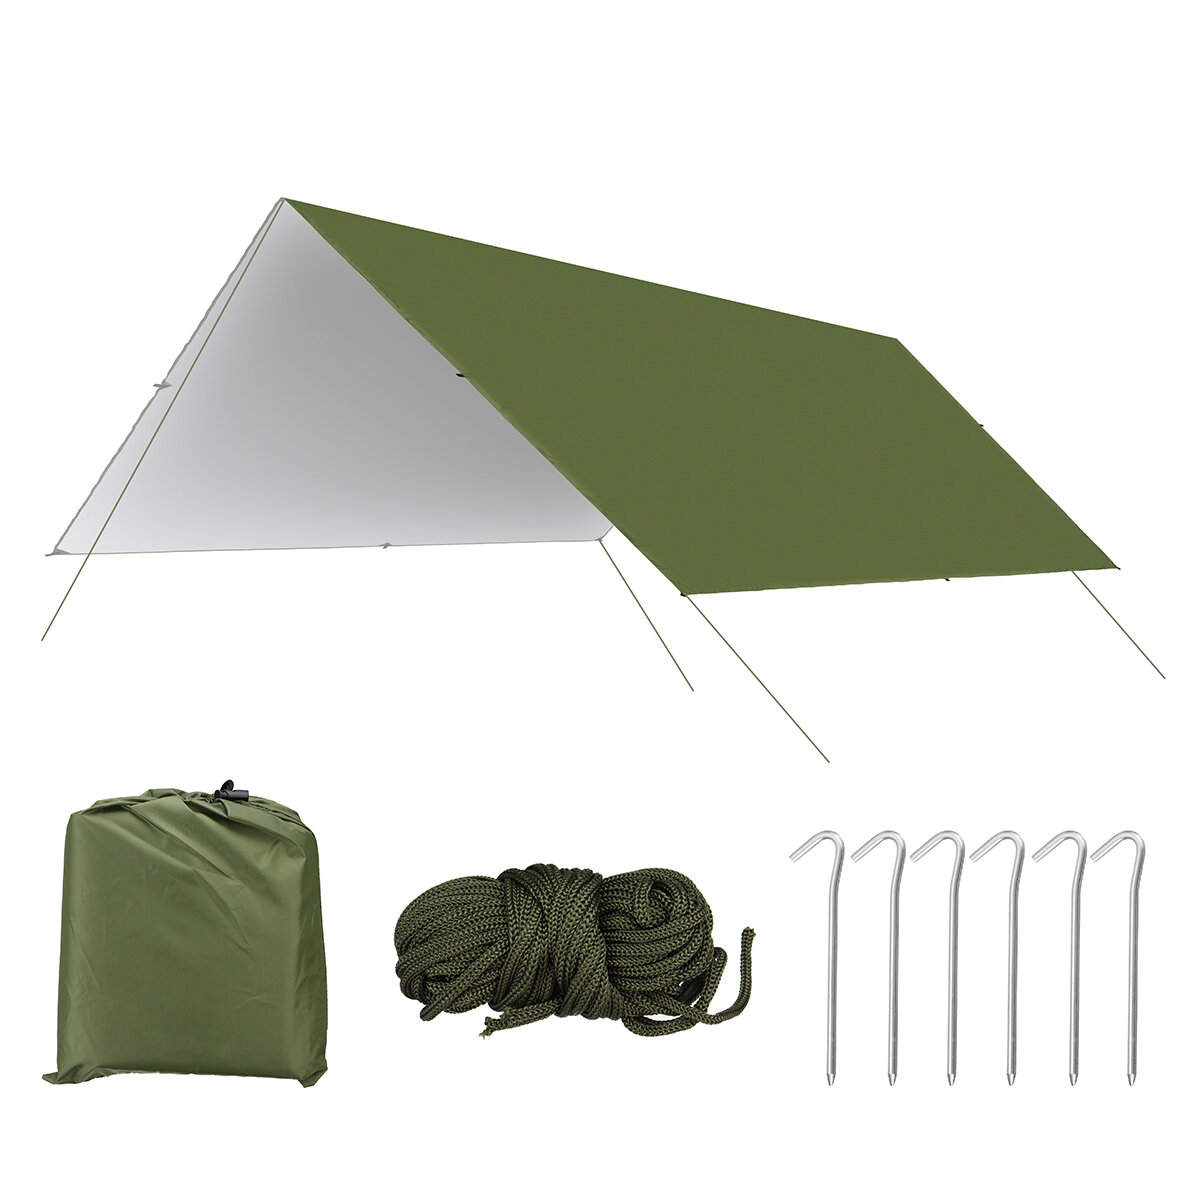 Auvent imperméable de 3x3m pour hamac, protection contre le soleil et la pluie sur la plage ou pendant le camping.